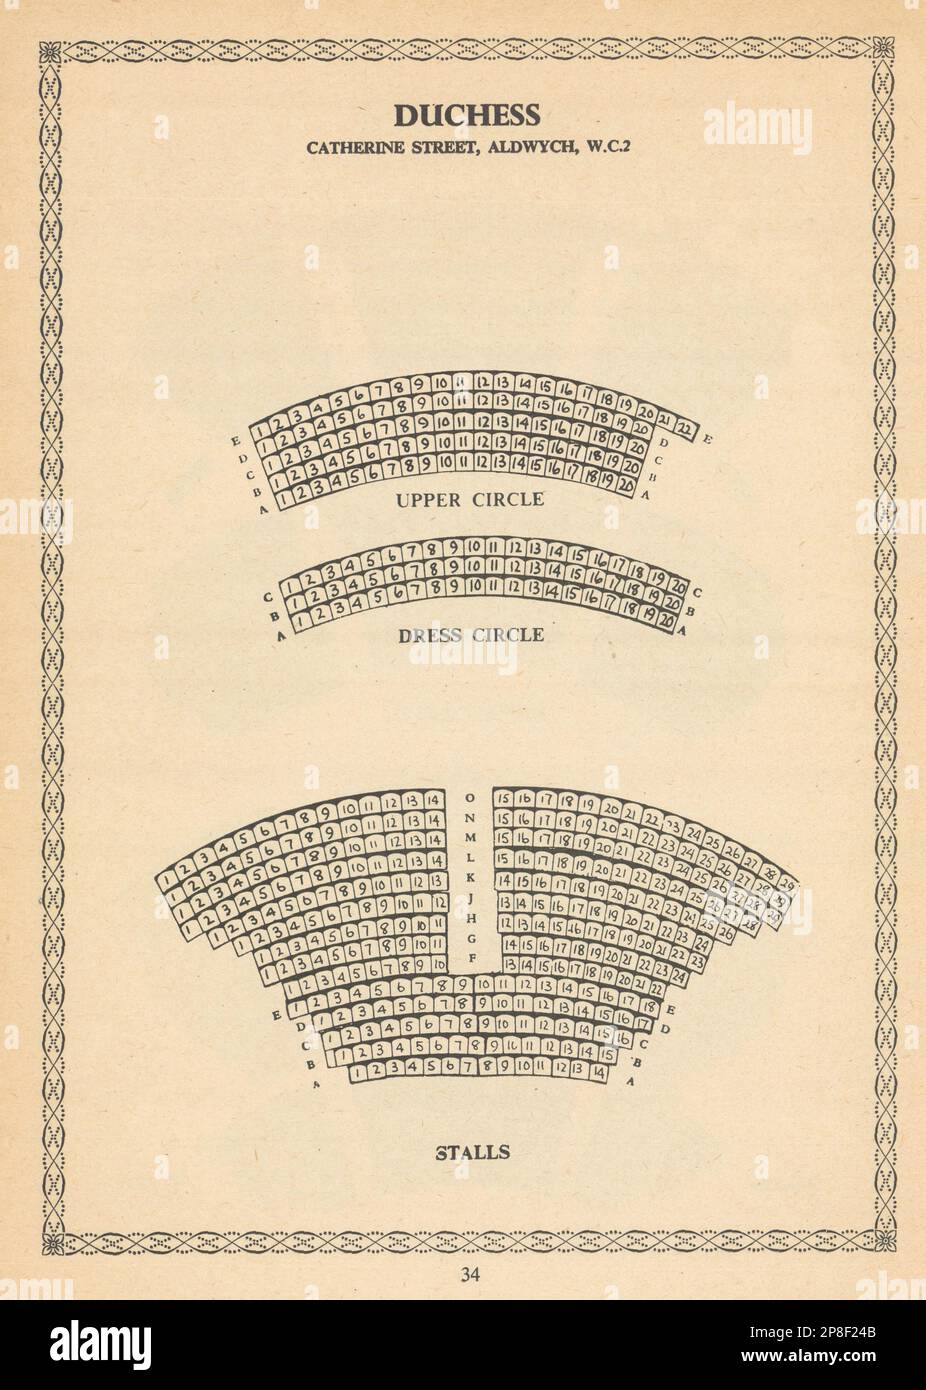 Duchess Theatre, Aldwych, Covent Garden, Londres. Plan d'agencement vintage 1960 Banque D'Images